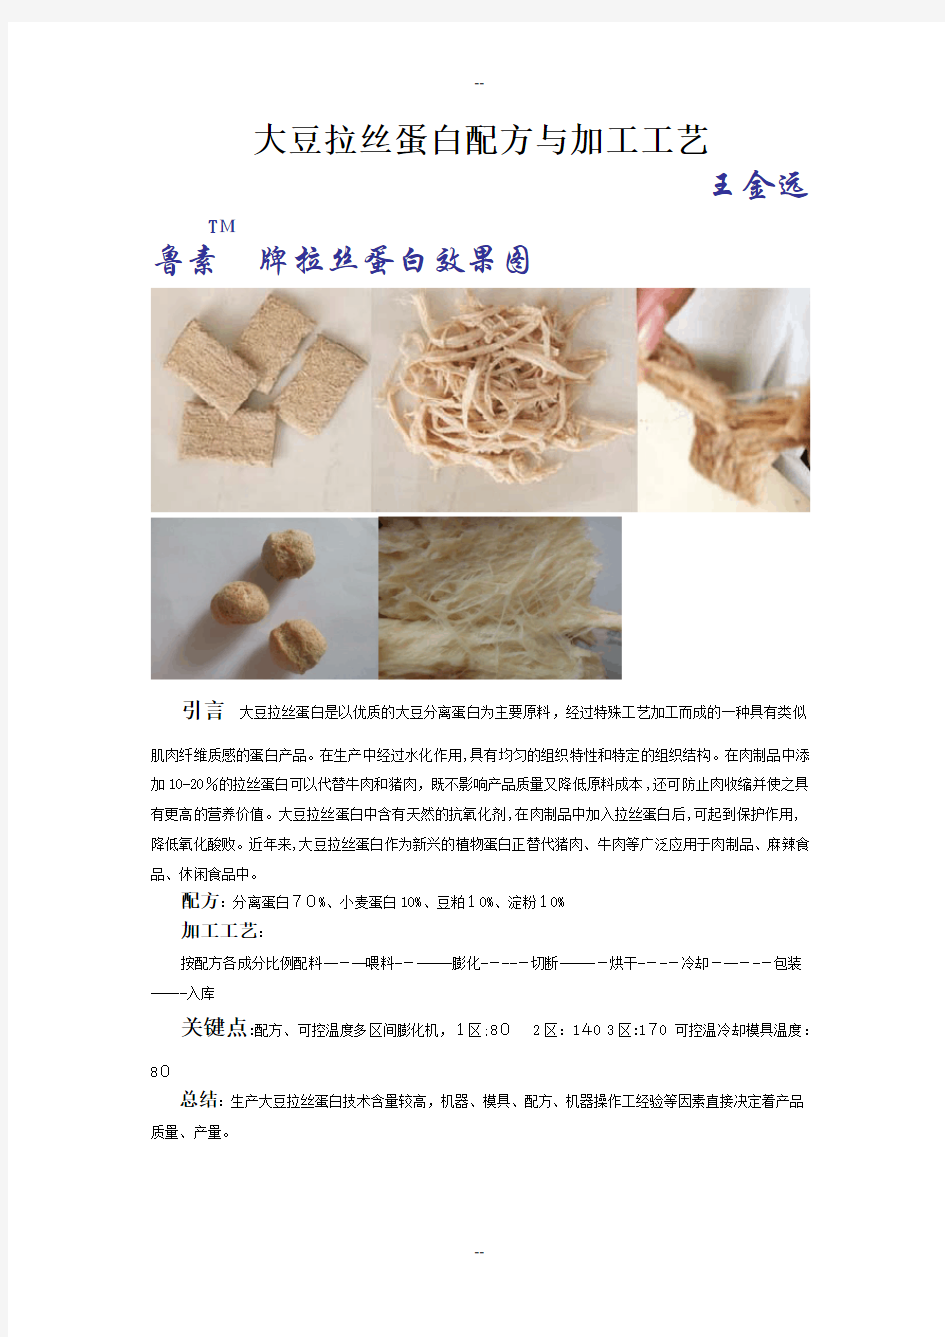 大豆拉丝蛋白配方与生产工艺技术